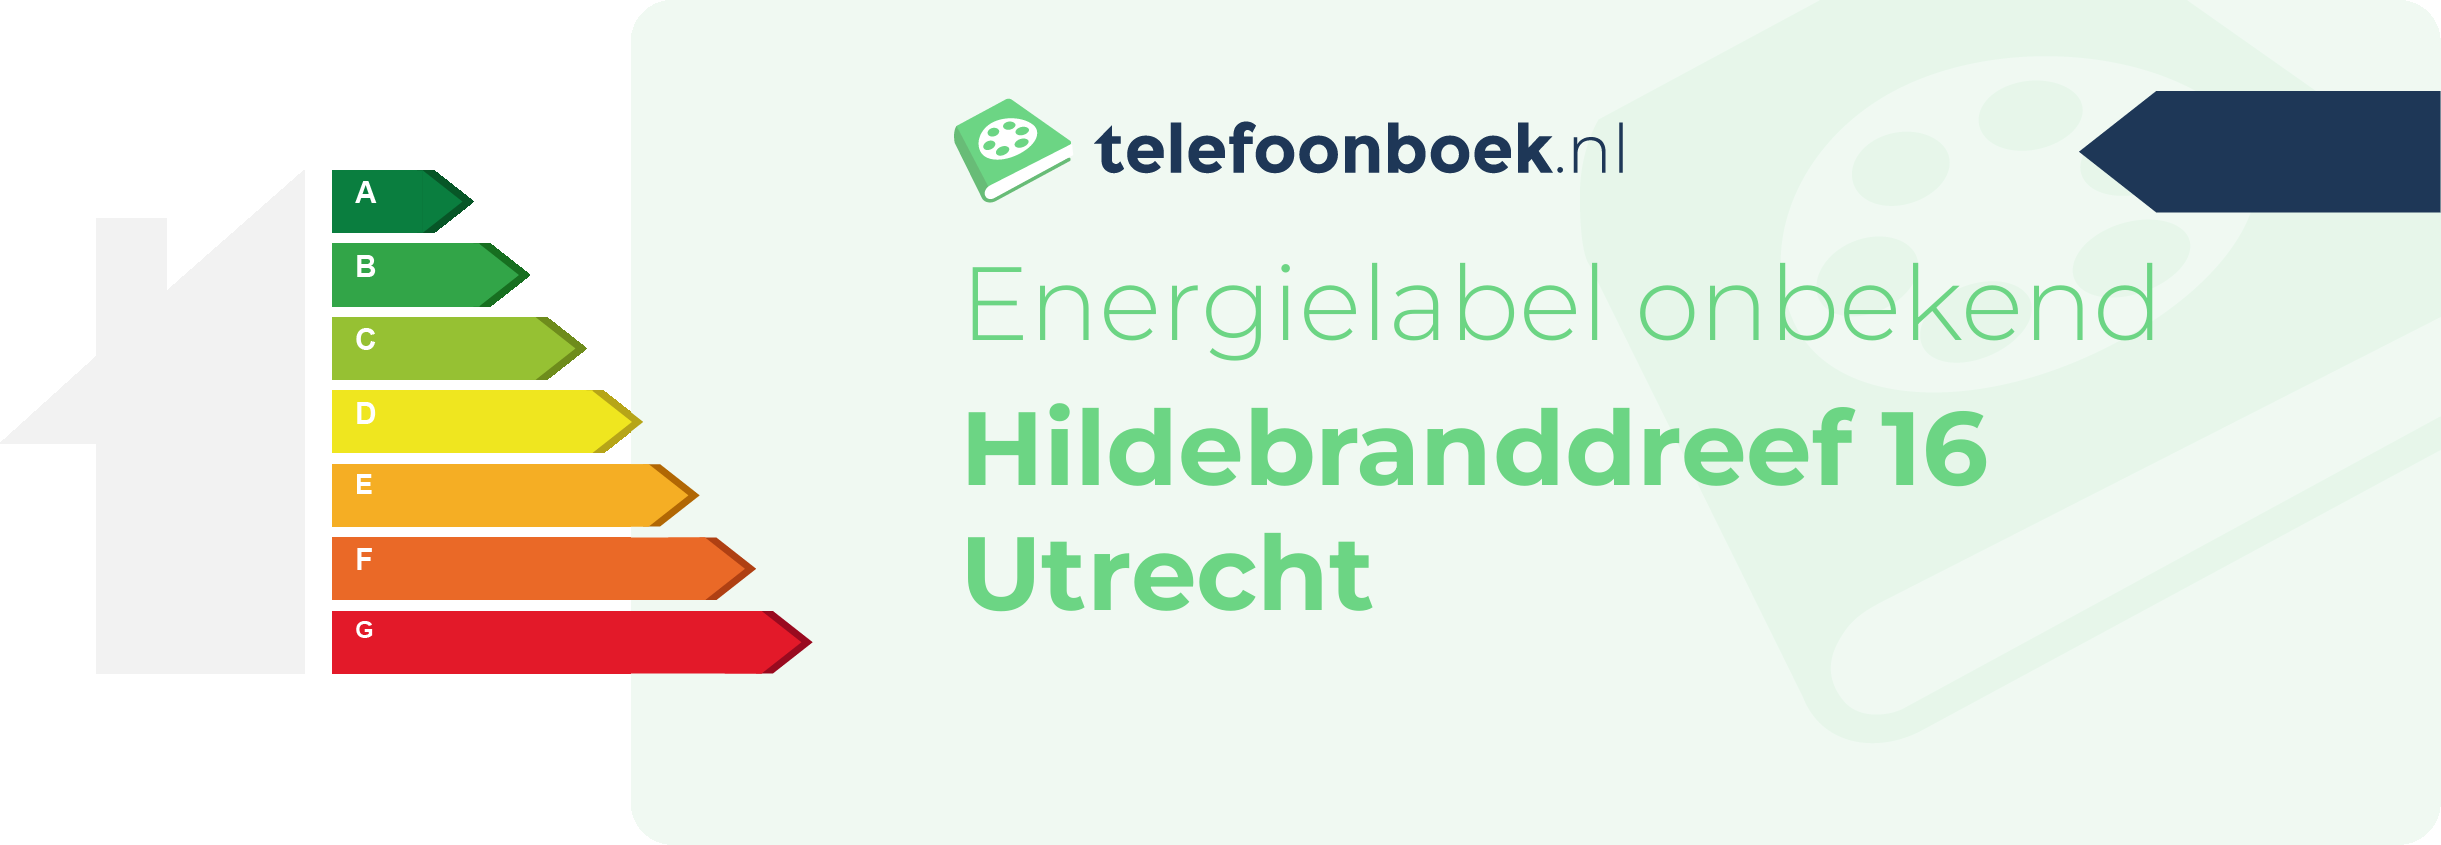 Energielabel Hildebranddreef 16 Utrecht